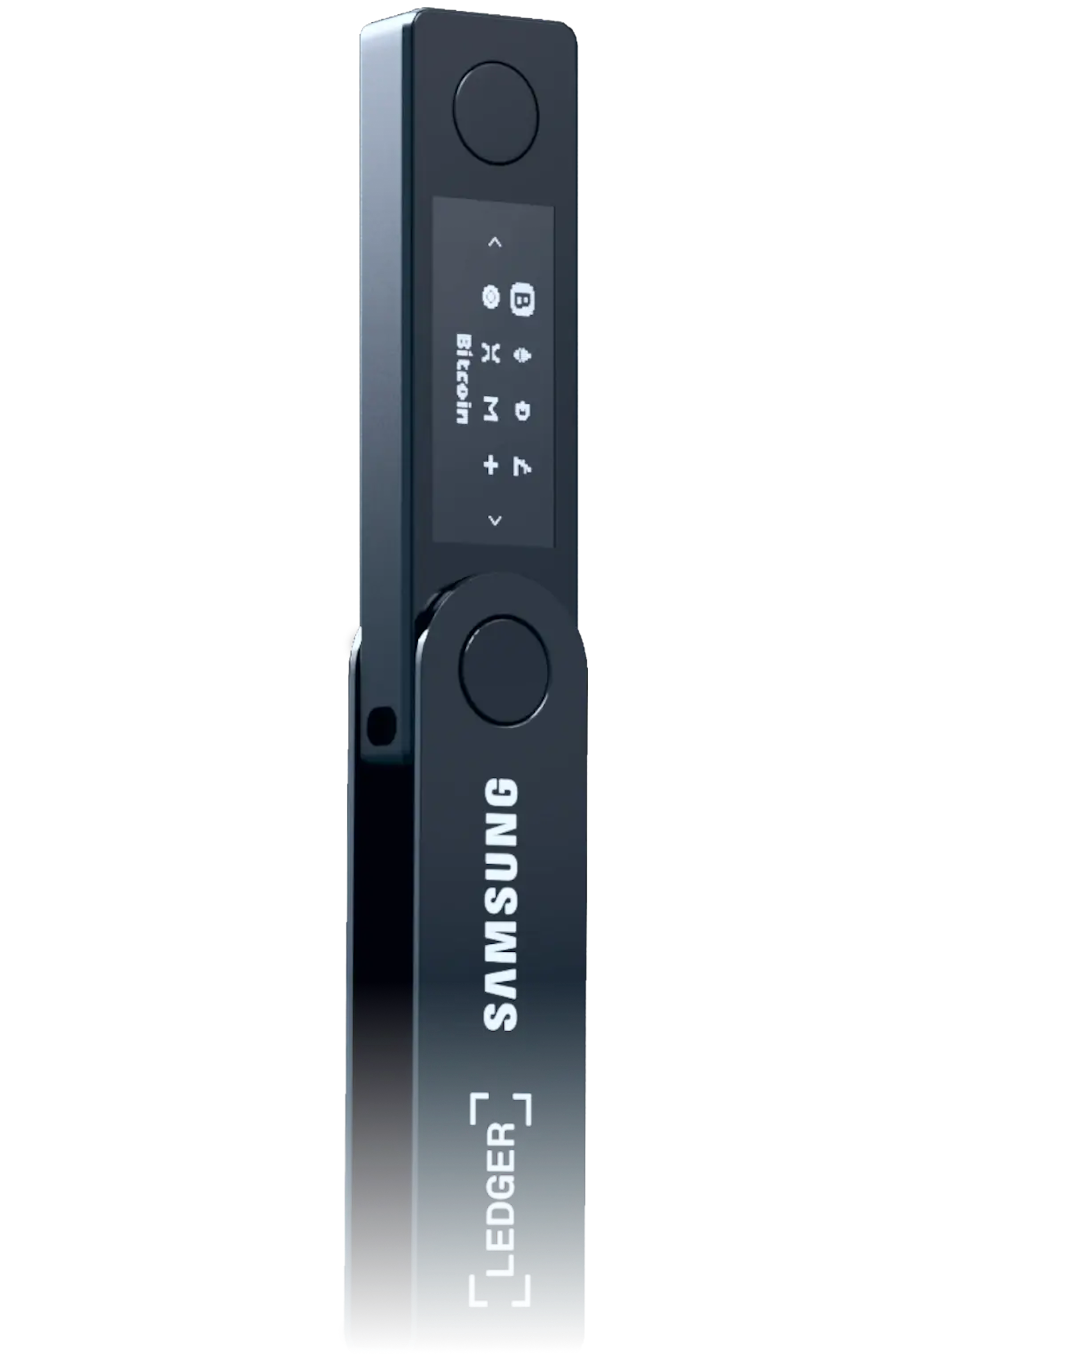 Samsung Ledger Nano X